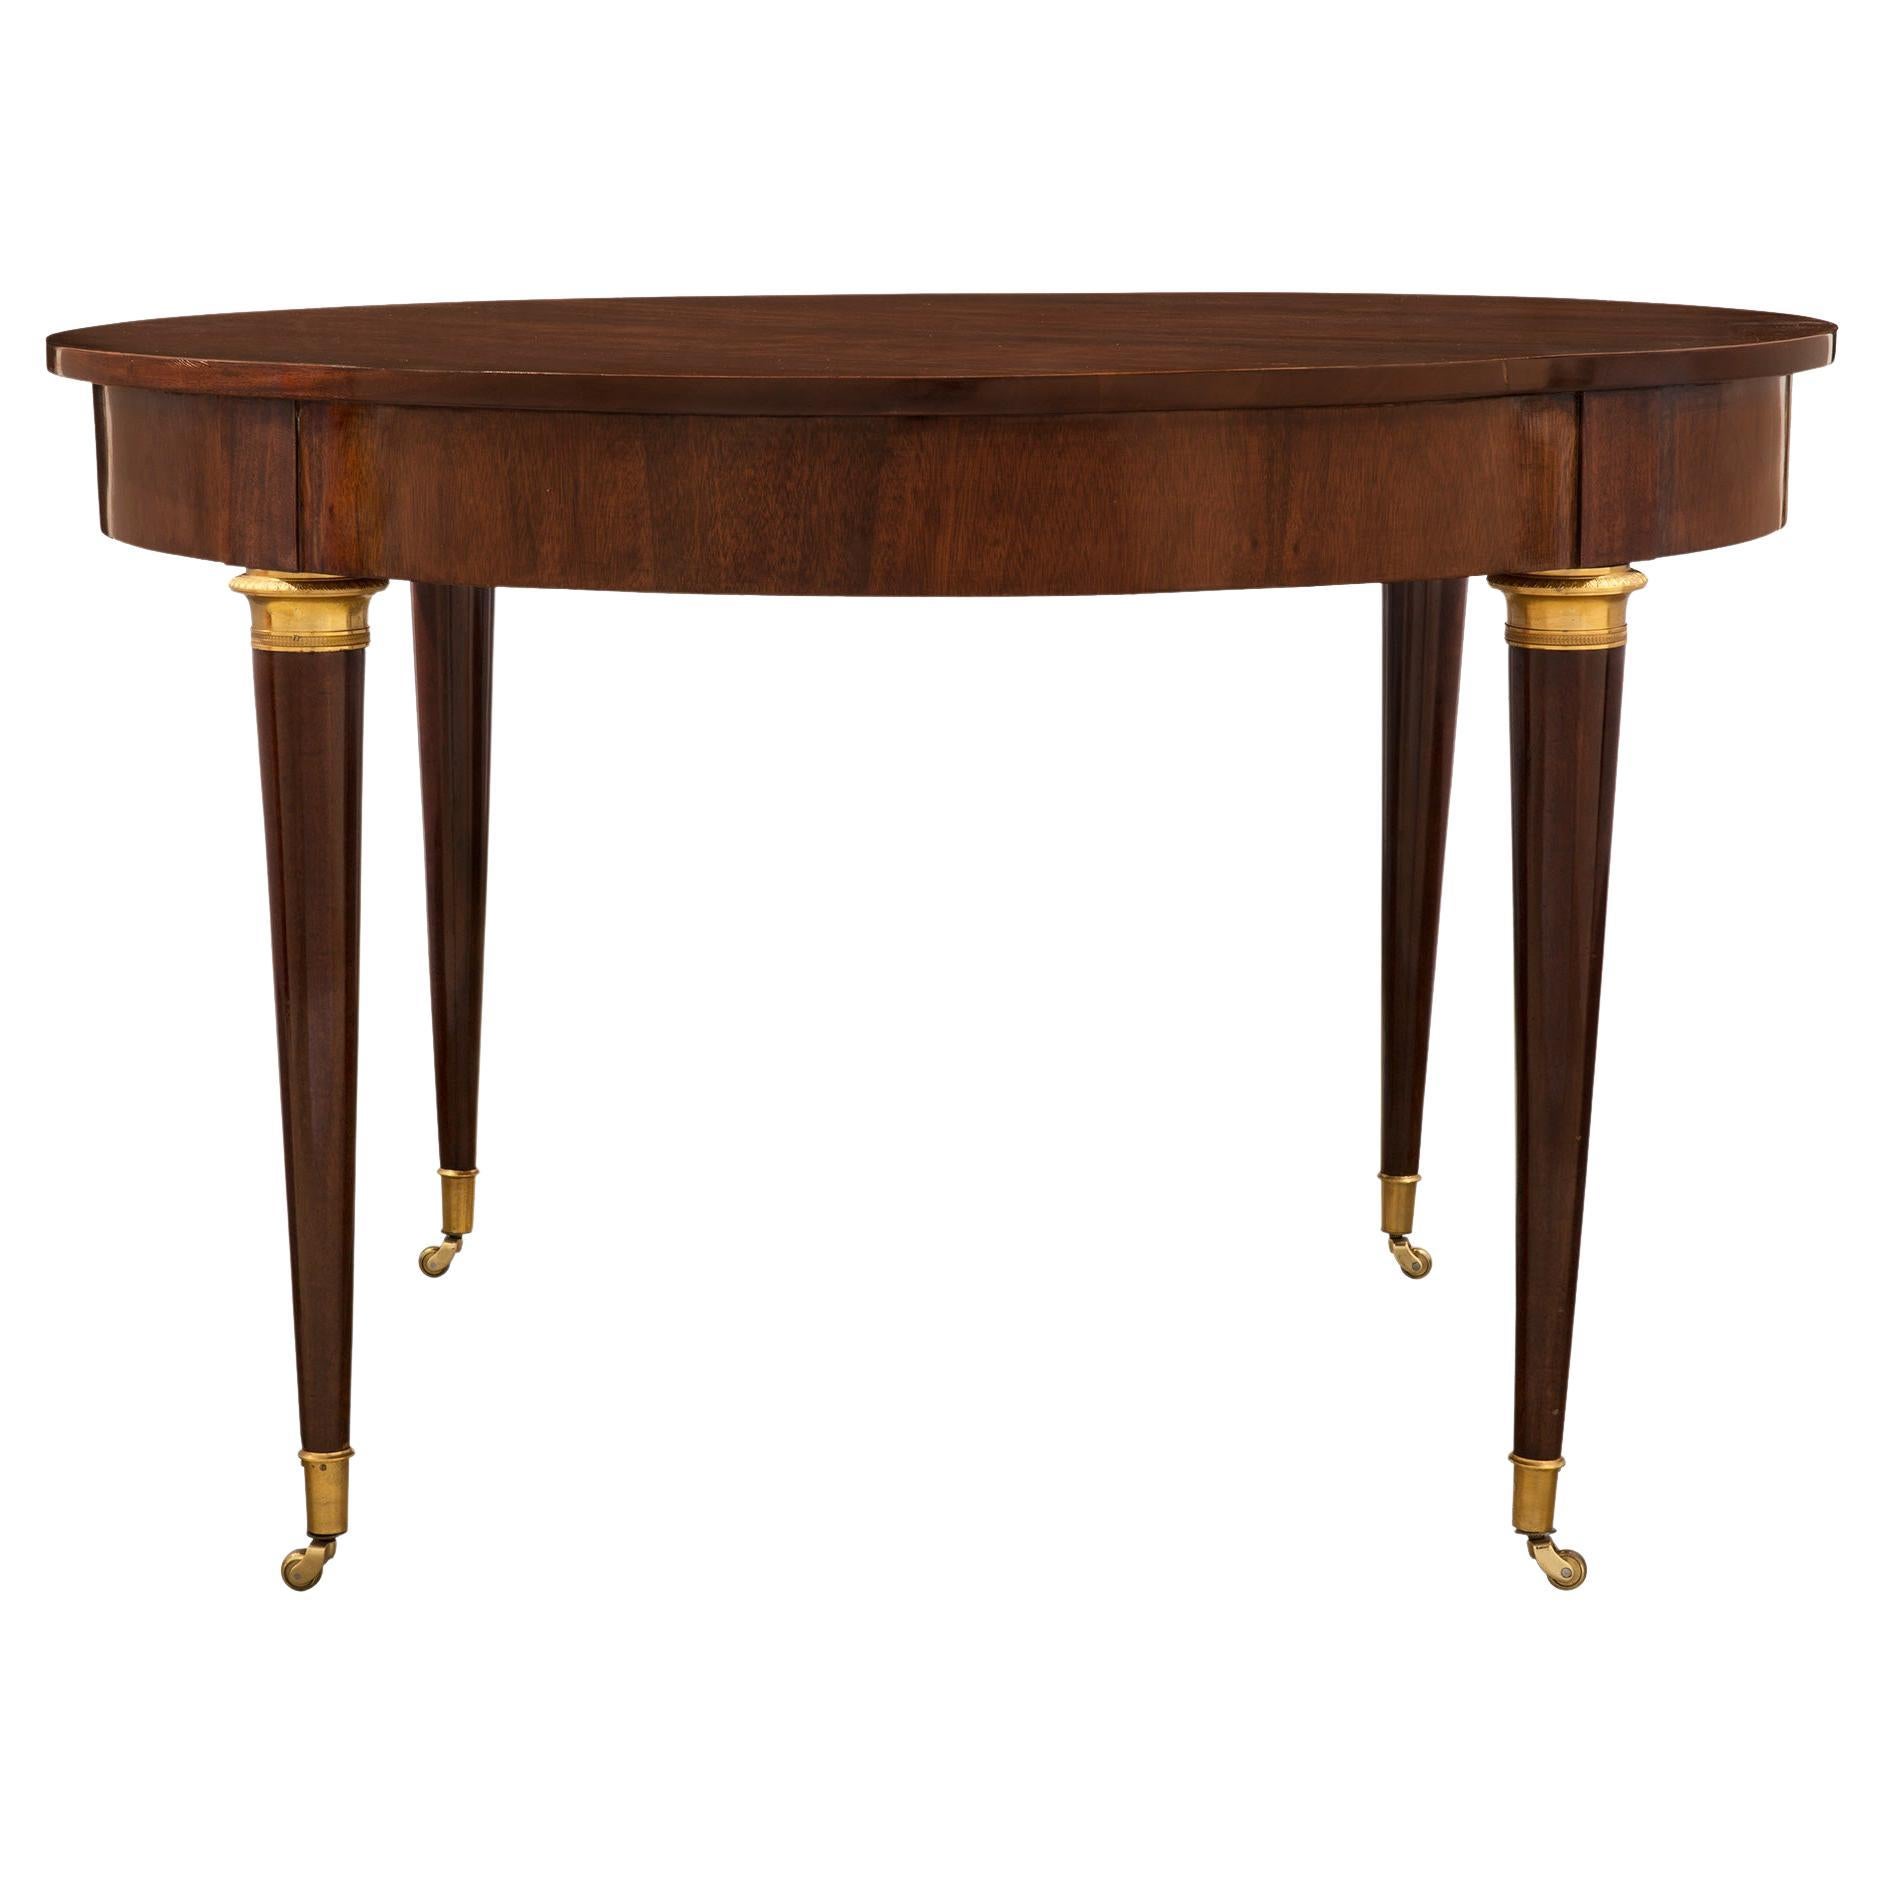 Table centrale en acajou de style néo-classique français du XIXe siècle